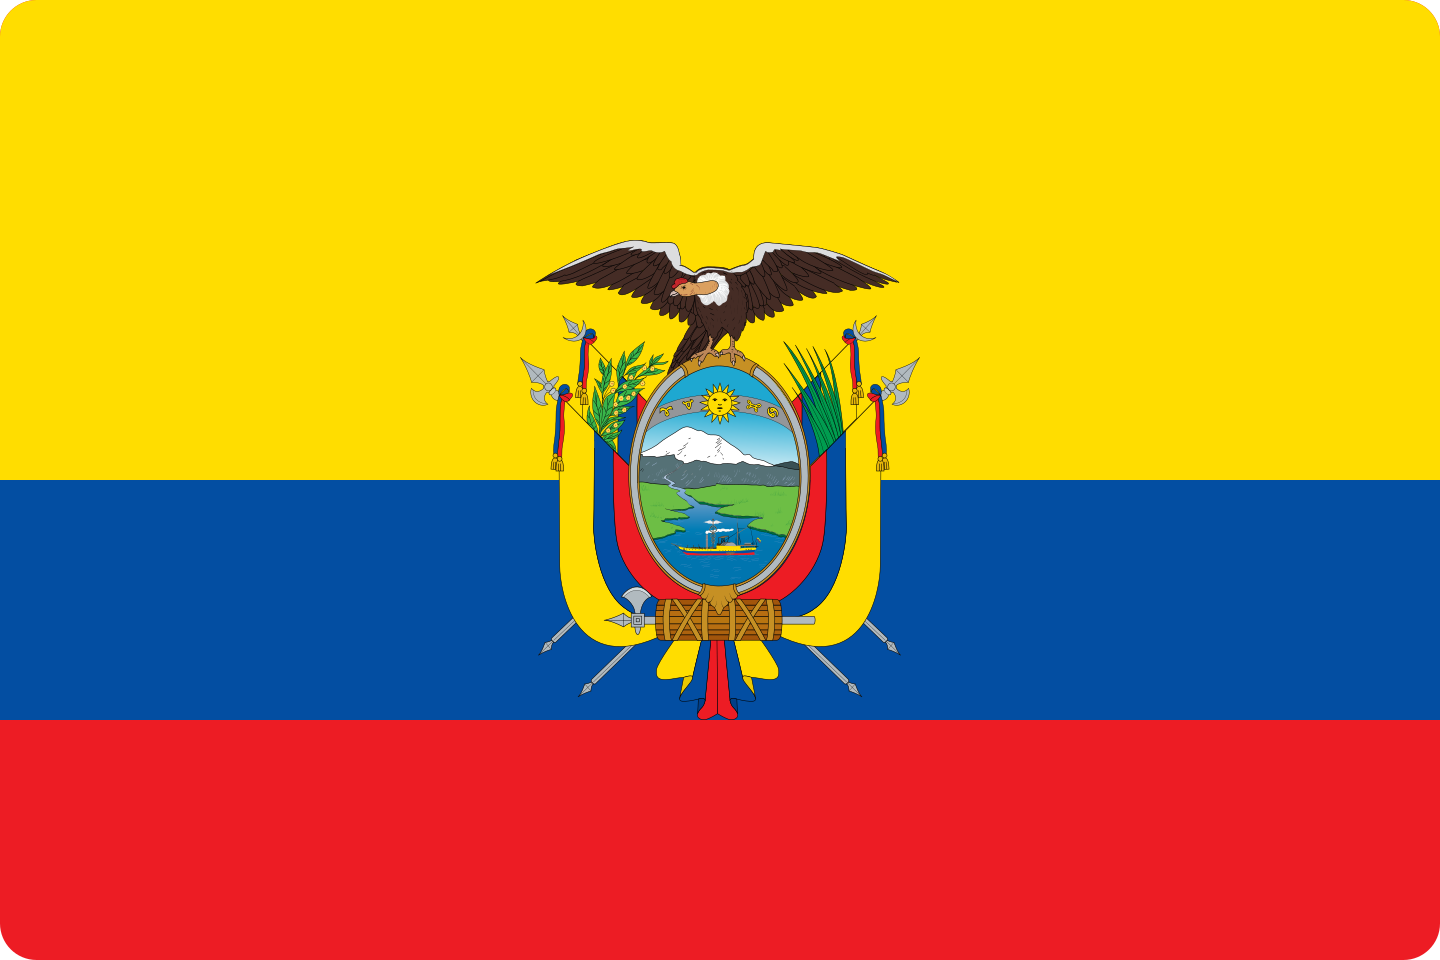 bandeira ecuador flag logo 1 - Flag of Ecuador